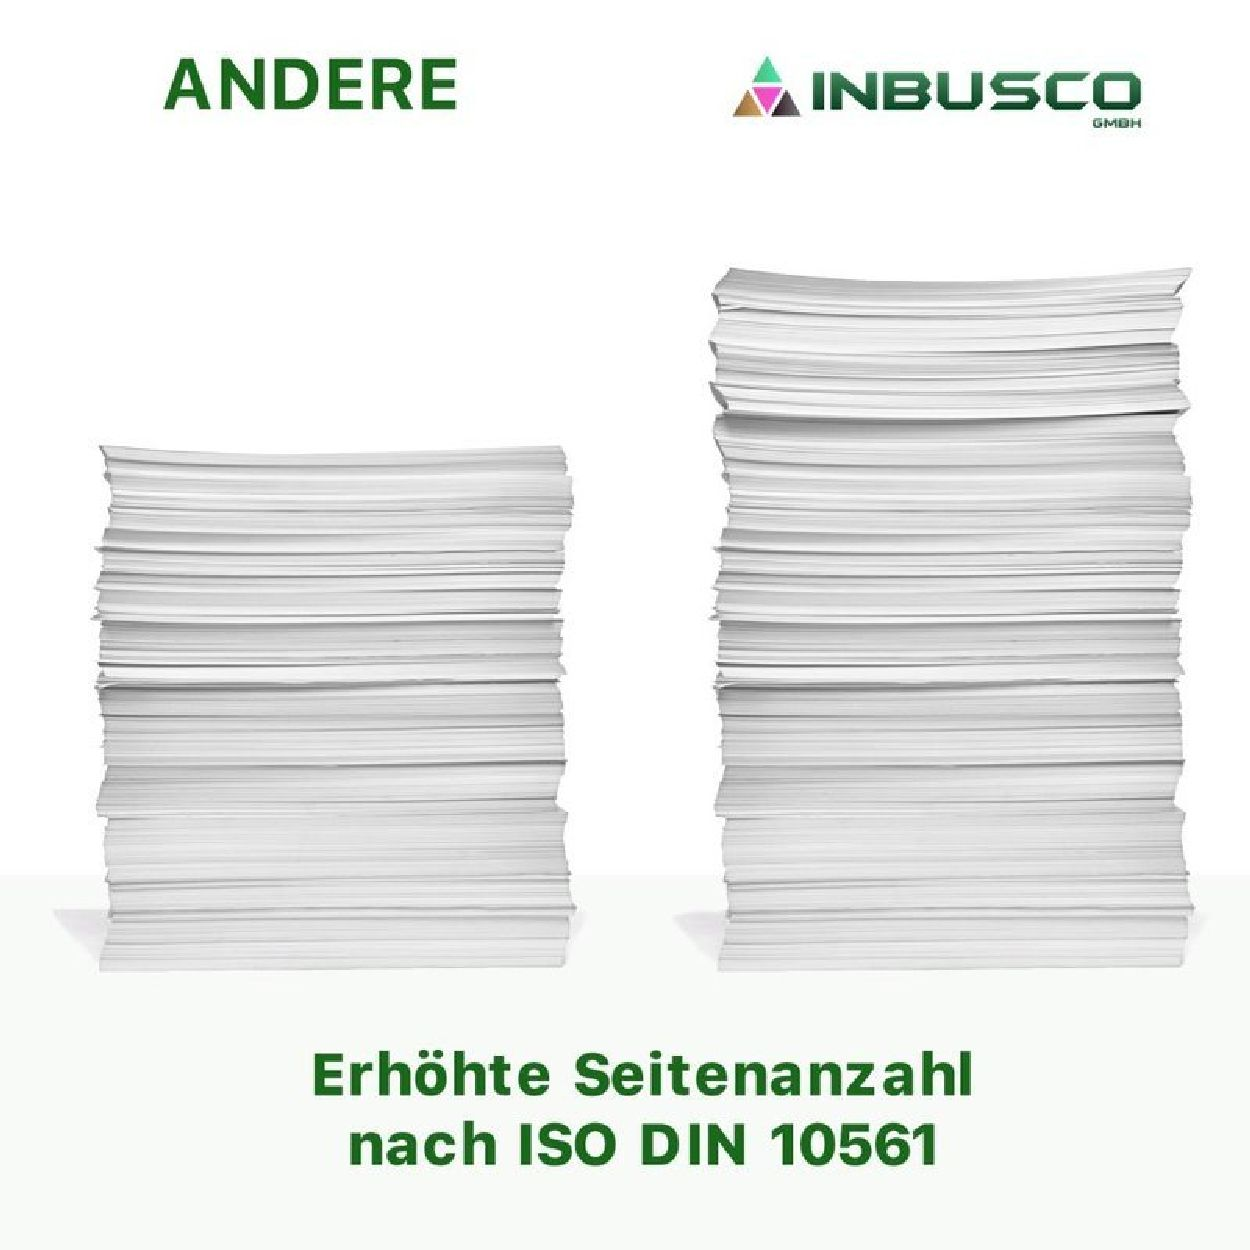 INBUSCO / KUBIS T603-V-NC-5x Tintenpatrone Mehrfarbig (T603-V-NC-5x)